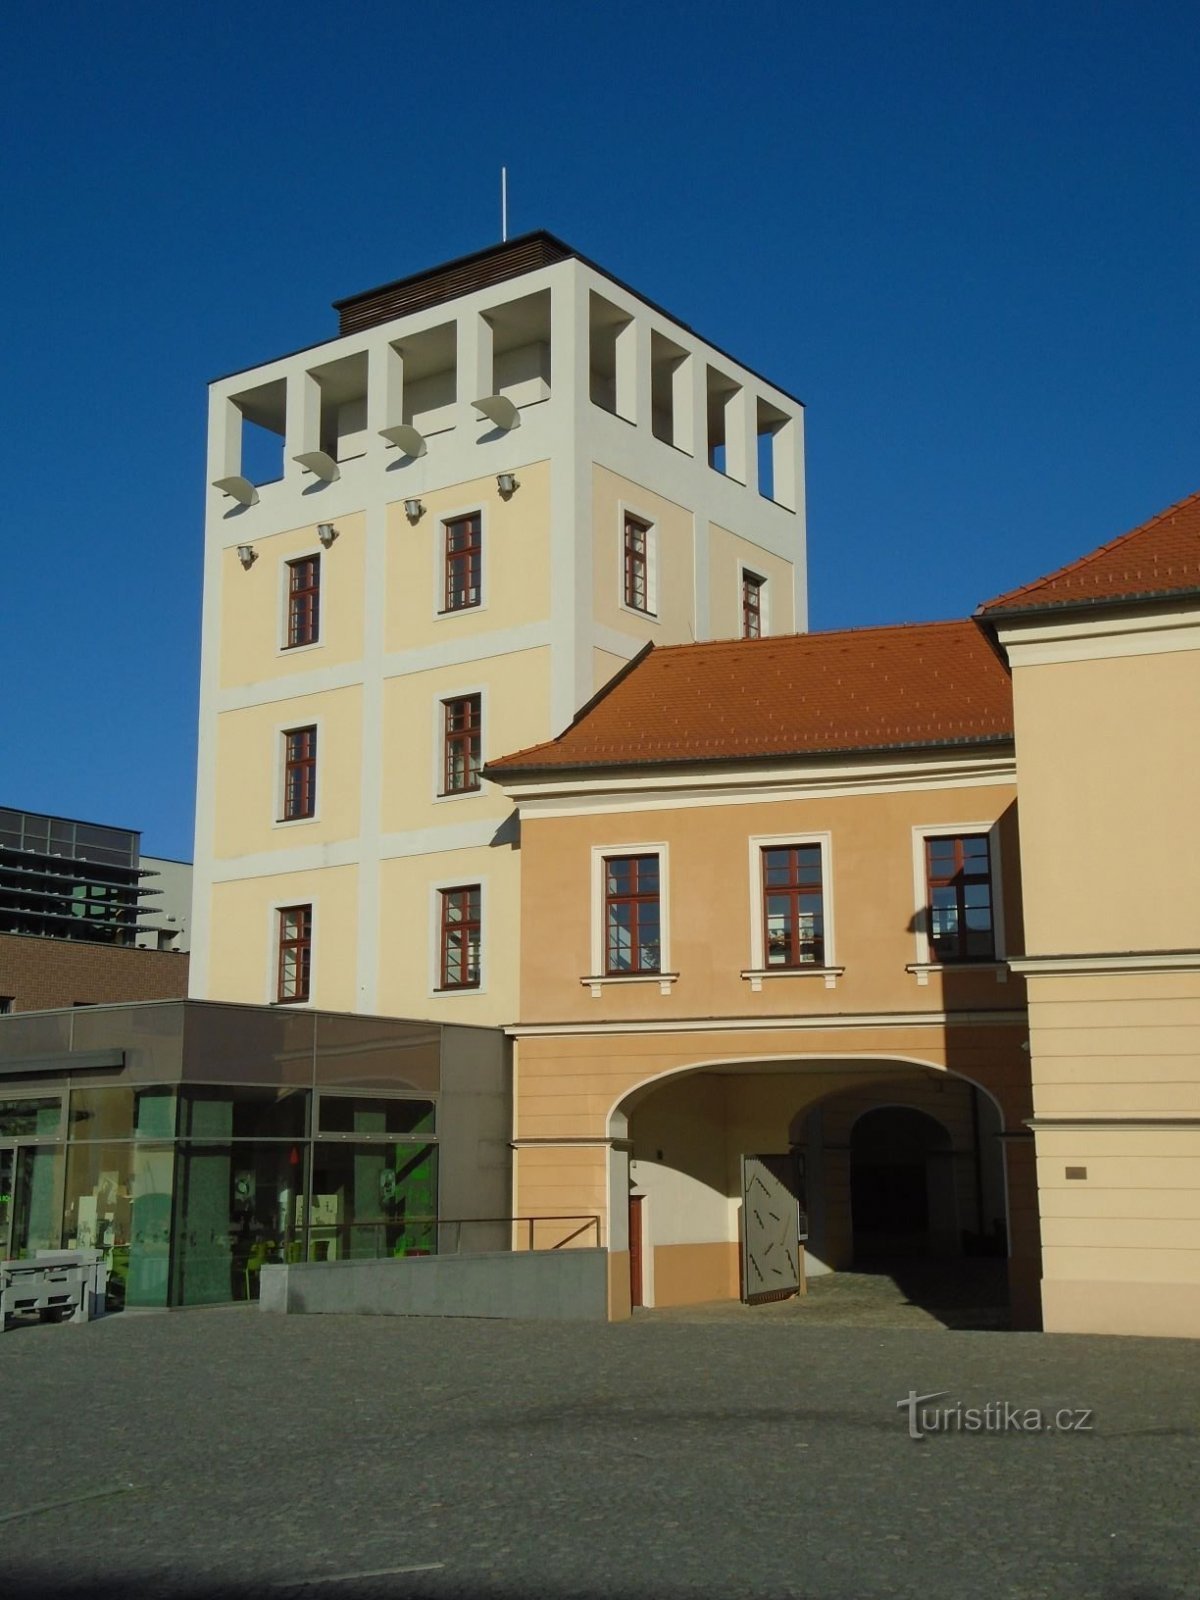 La antigua torre de agua de Kozinka (Hradec Králové, 17.11.2018/XNUMX/XNUMX)